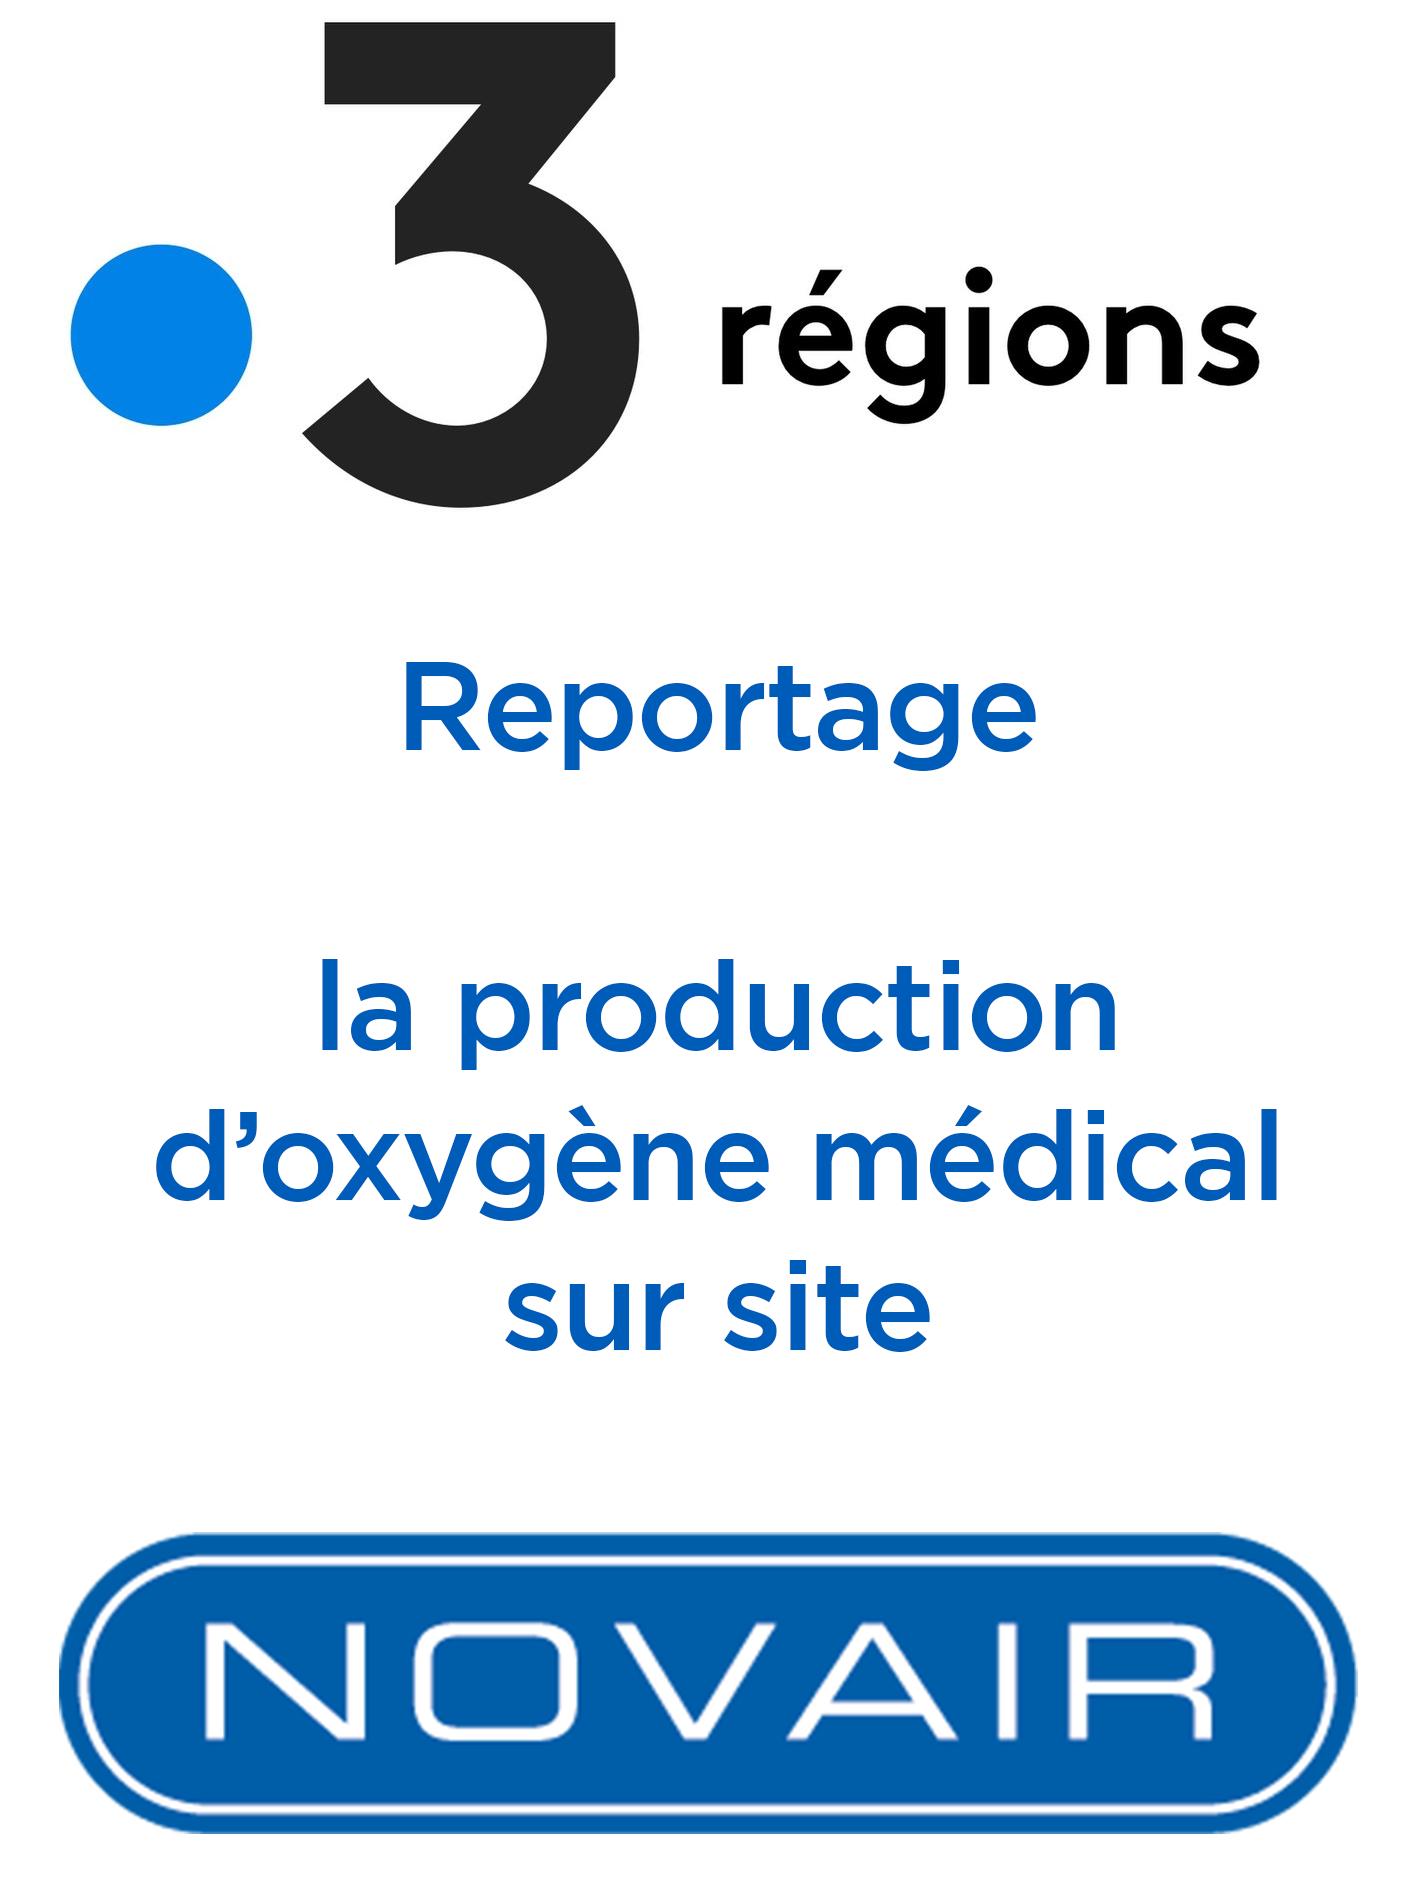 La production d'oxygène médical sur site: une réponse autonome et écoresponsable aux besoins accrus en oxygène